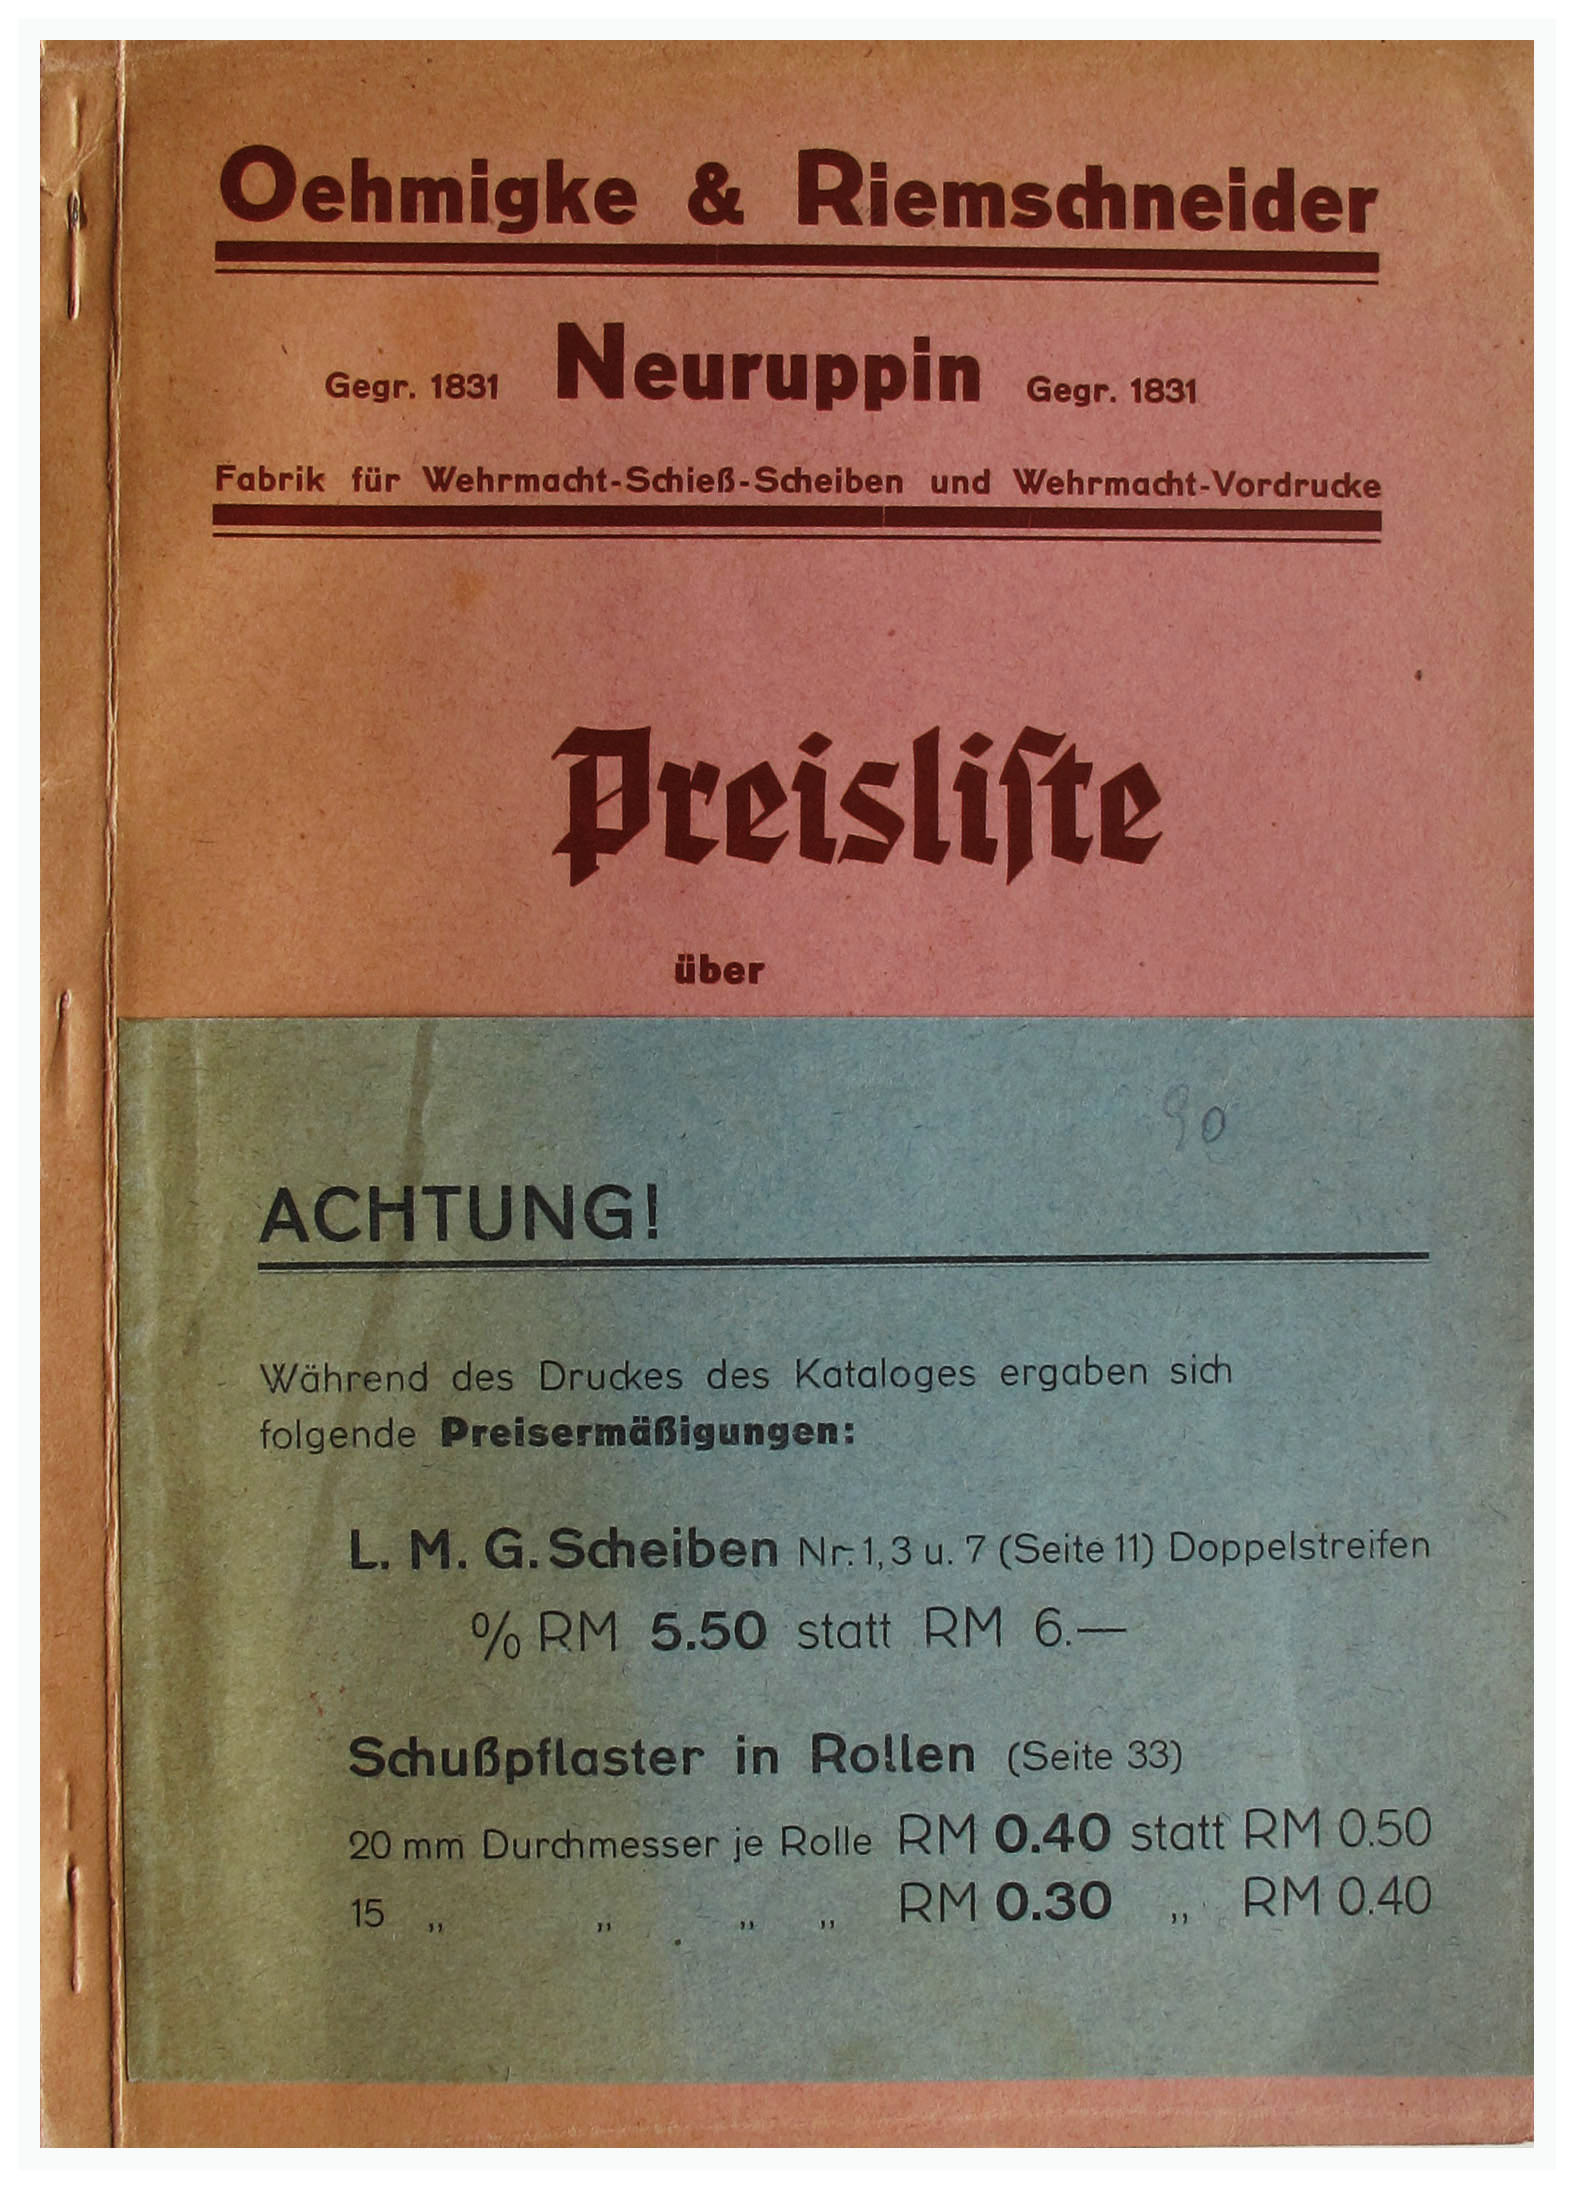 File:1938 Oehmigke & Riemschneider Preisliste über Wehrmacht